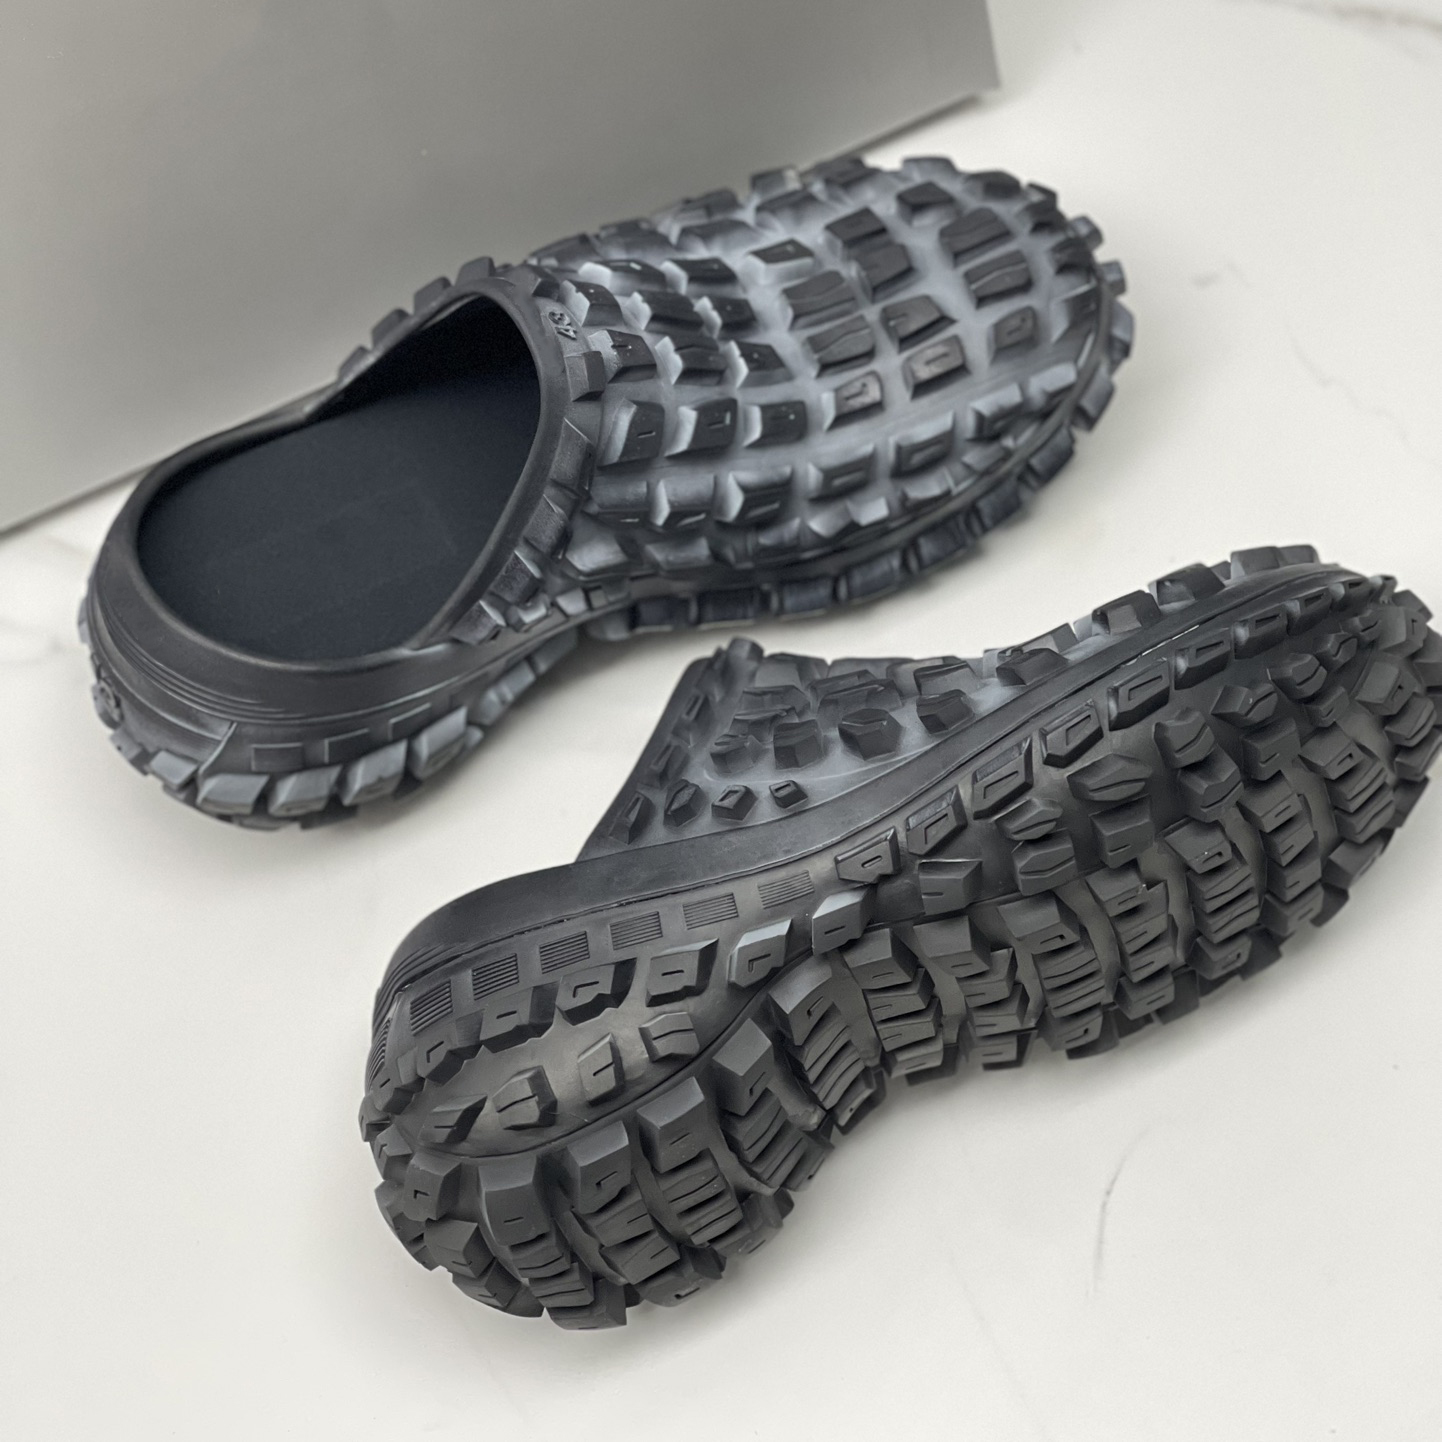 Designer Männer Schwarze Reifenreifen Slipper Sandalen Plattform Defender Schuhe Beule Textur Anti-Schlupf-Mode-Sommer-Slipper 39-45 Größe Herren Sandale